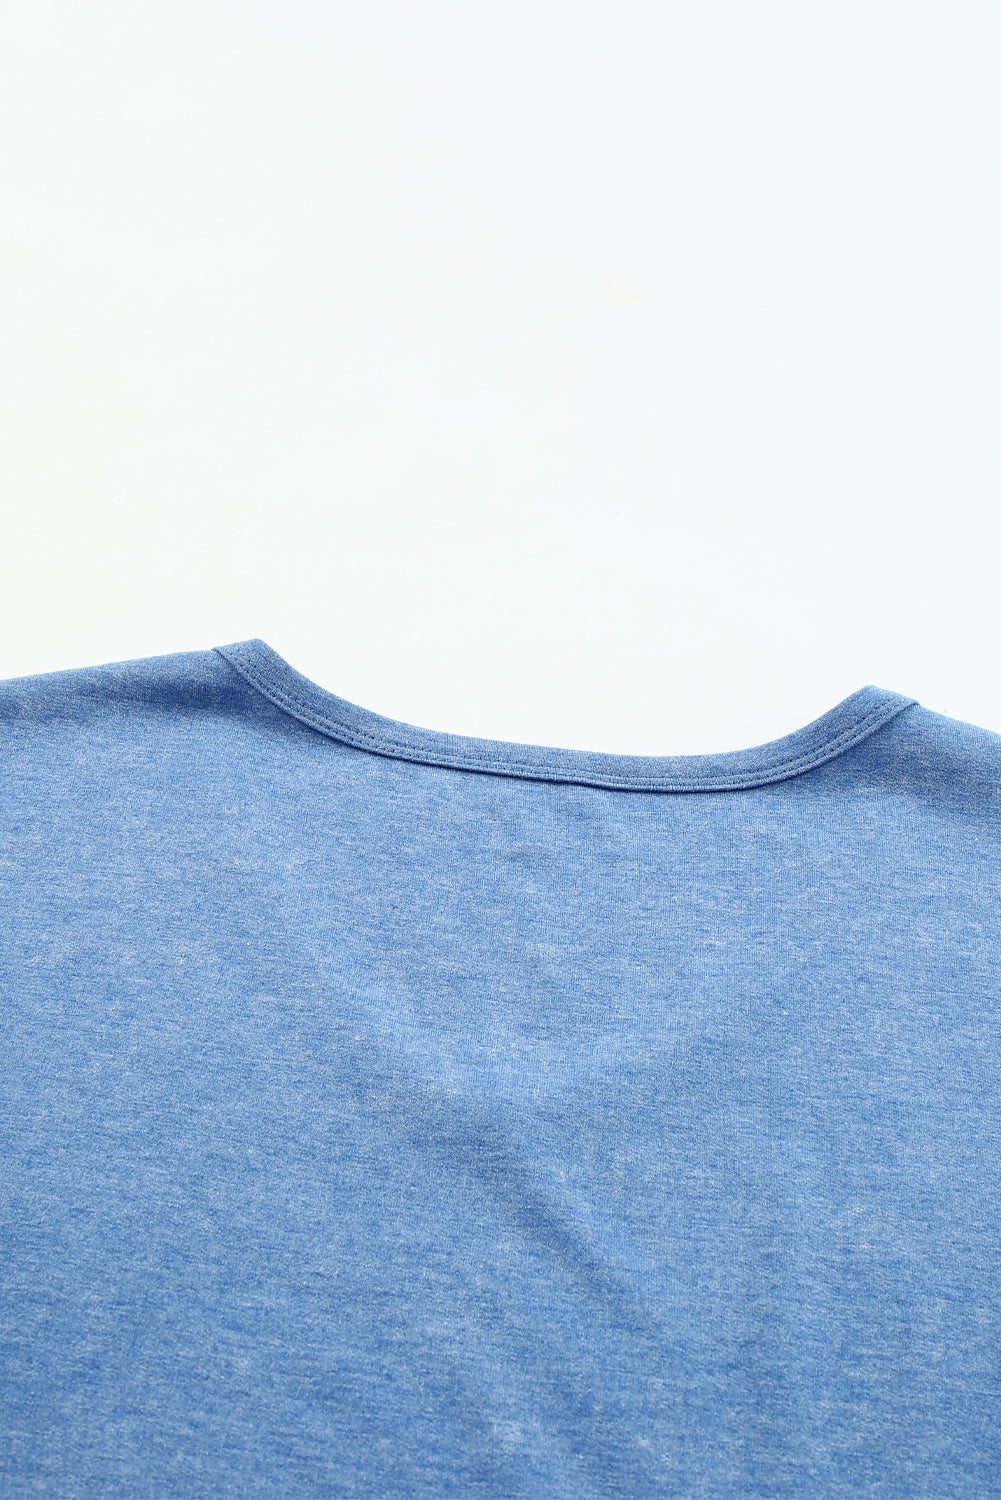 T-shirt a maniche corte con scollo a V lavato minerale azzurro cielo